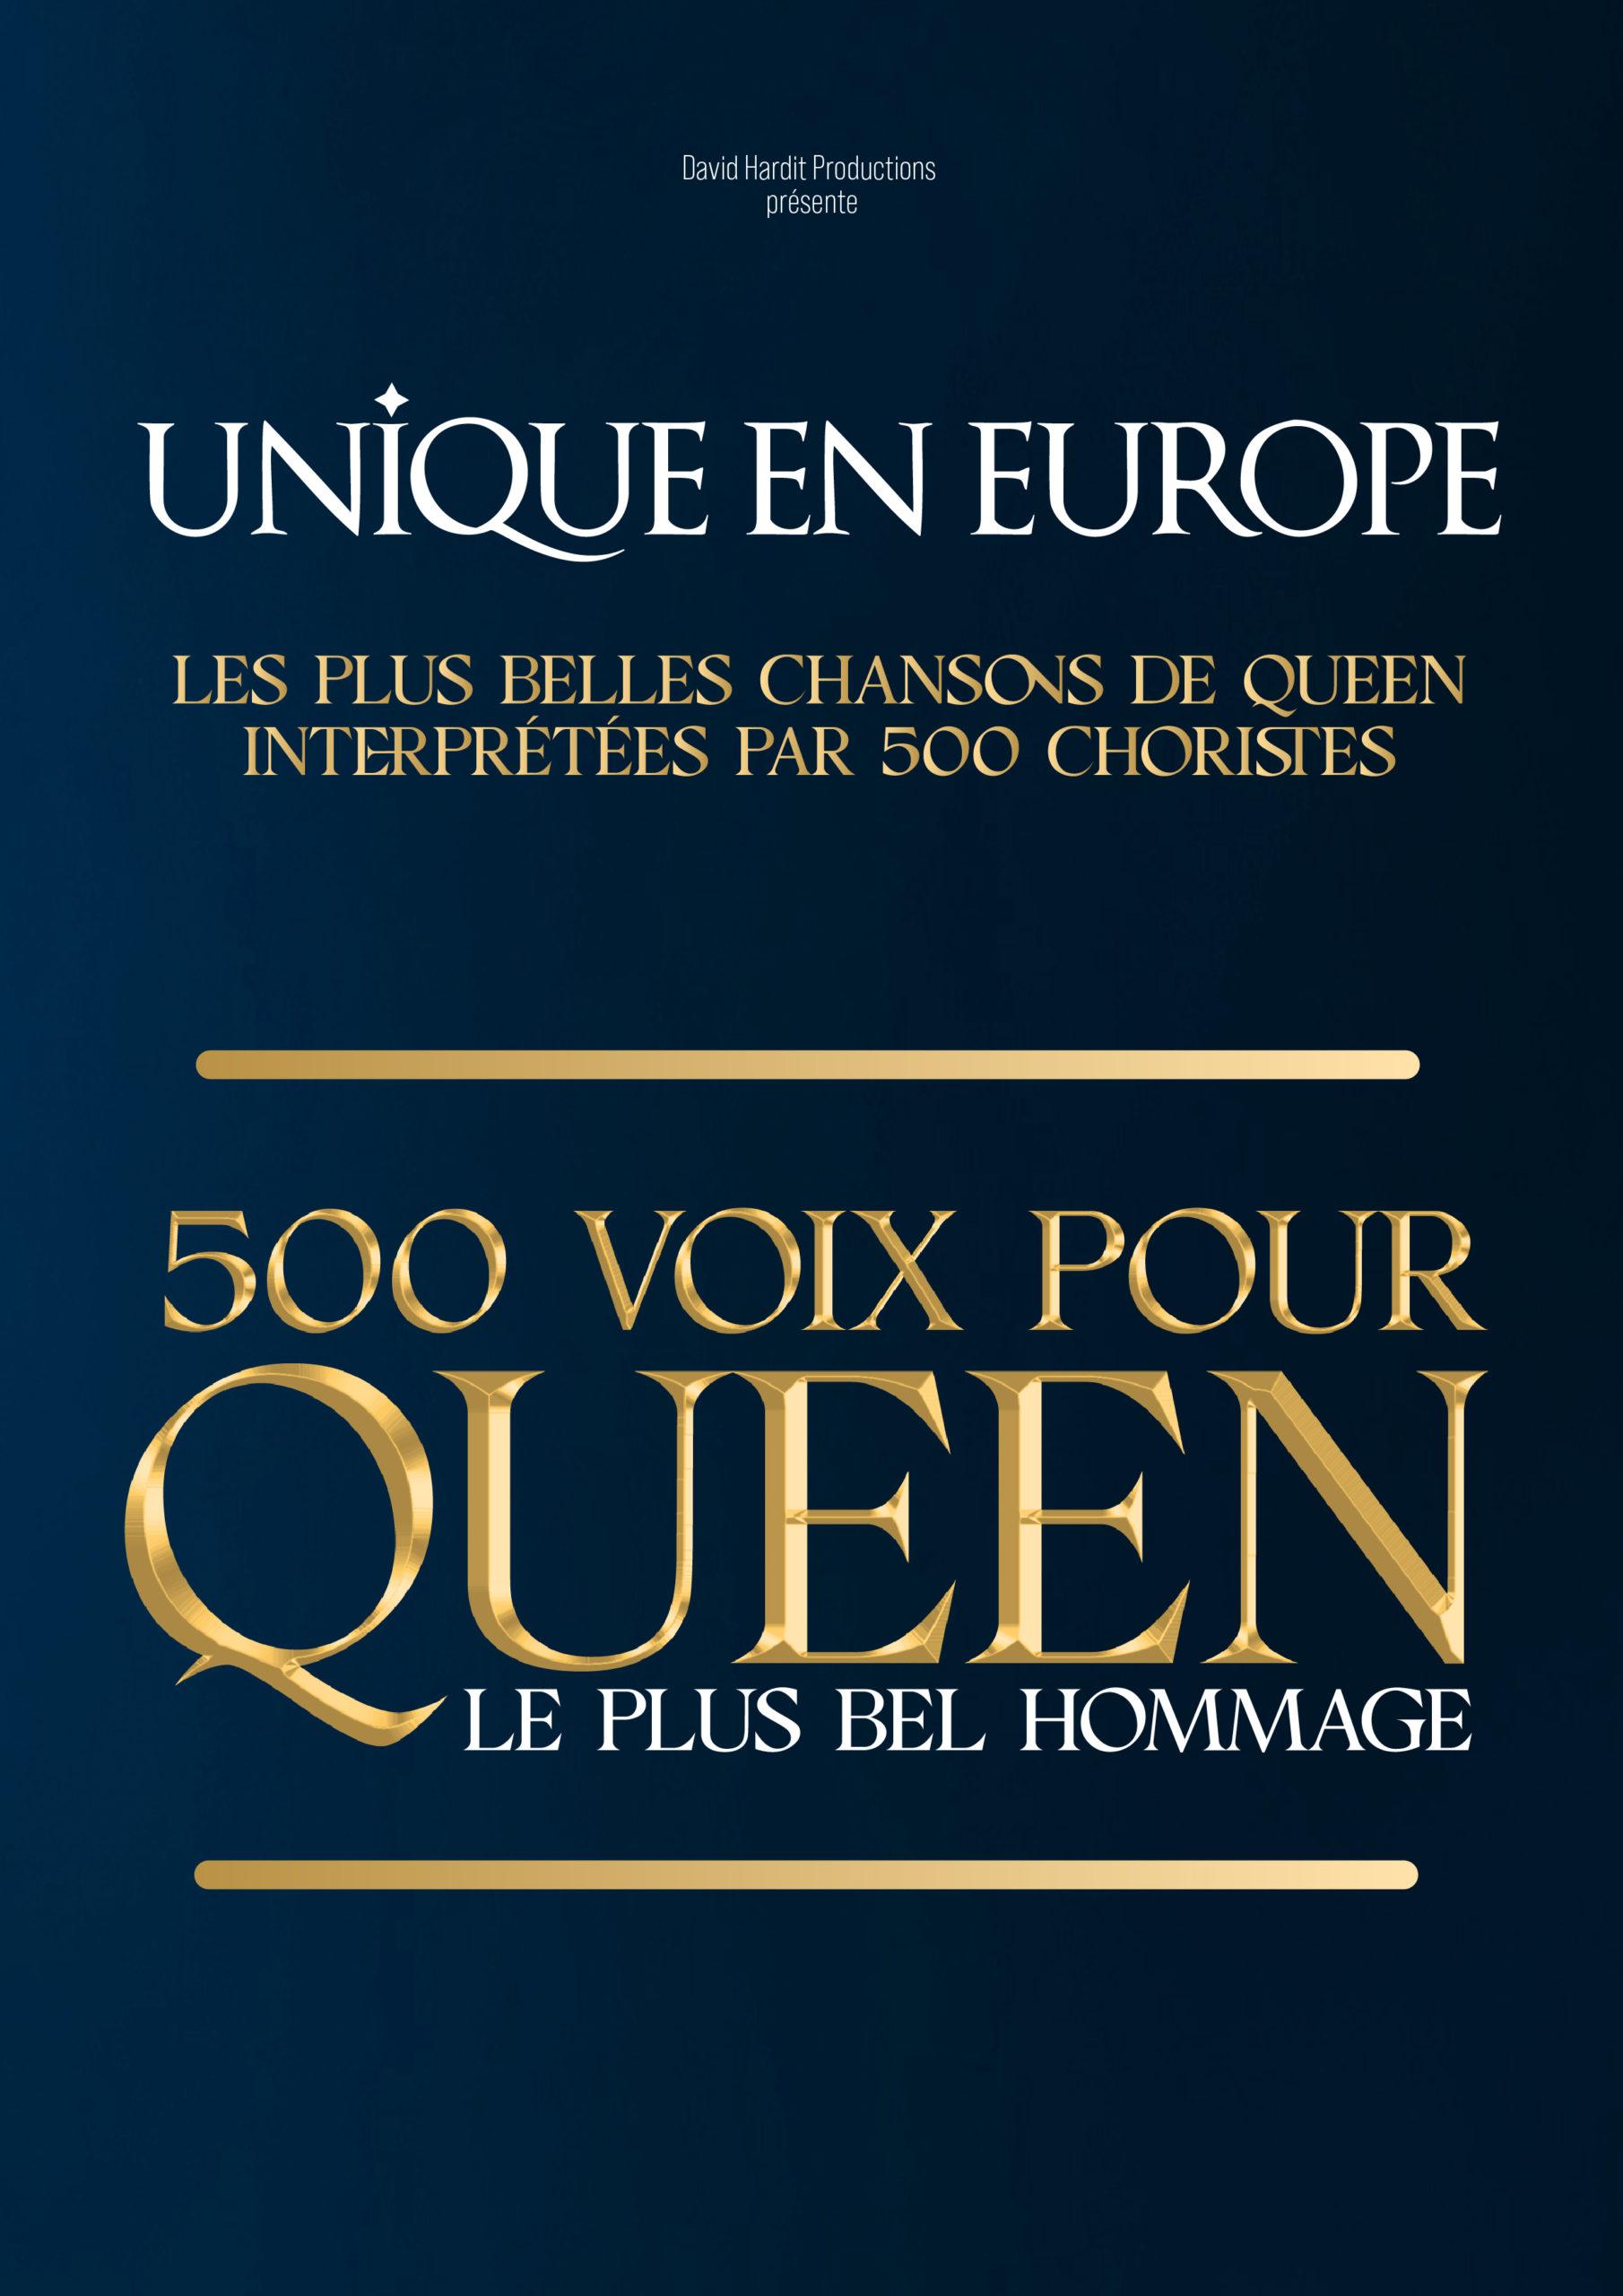 500 voix pour queen - Le Liberté - Rennes (35)